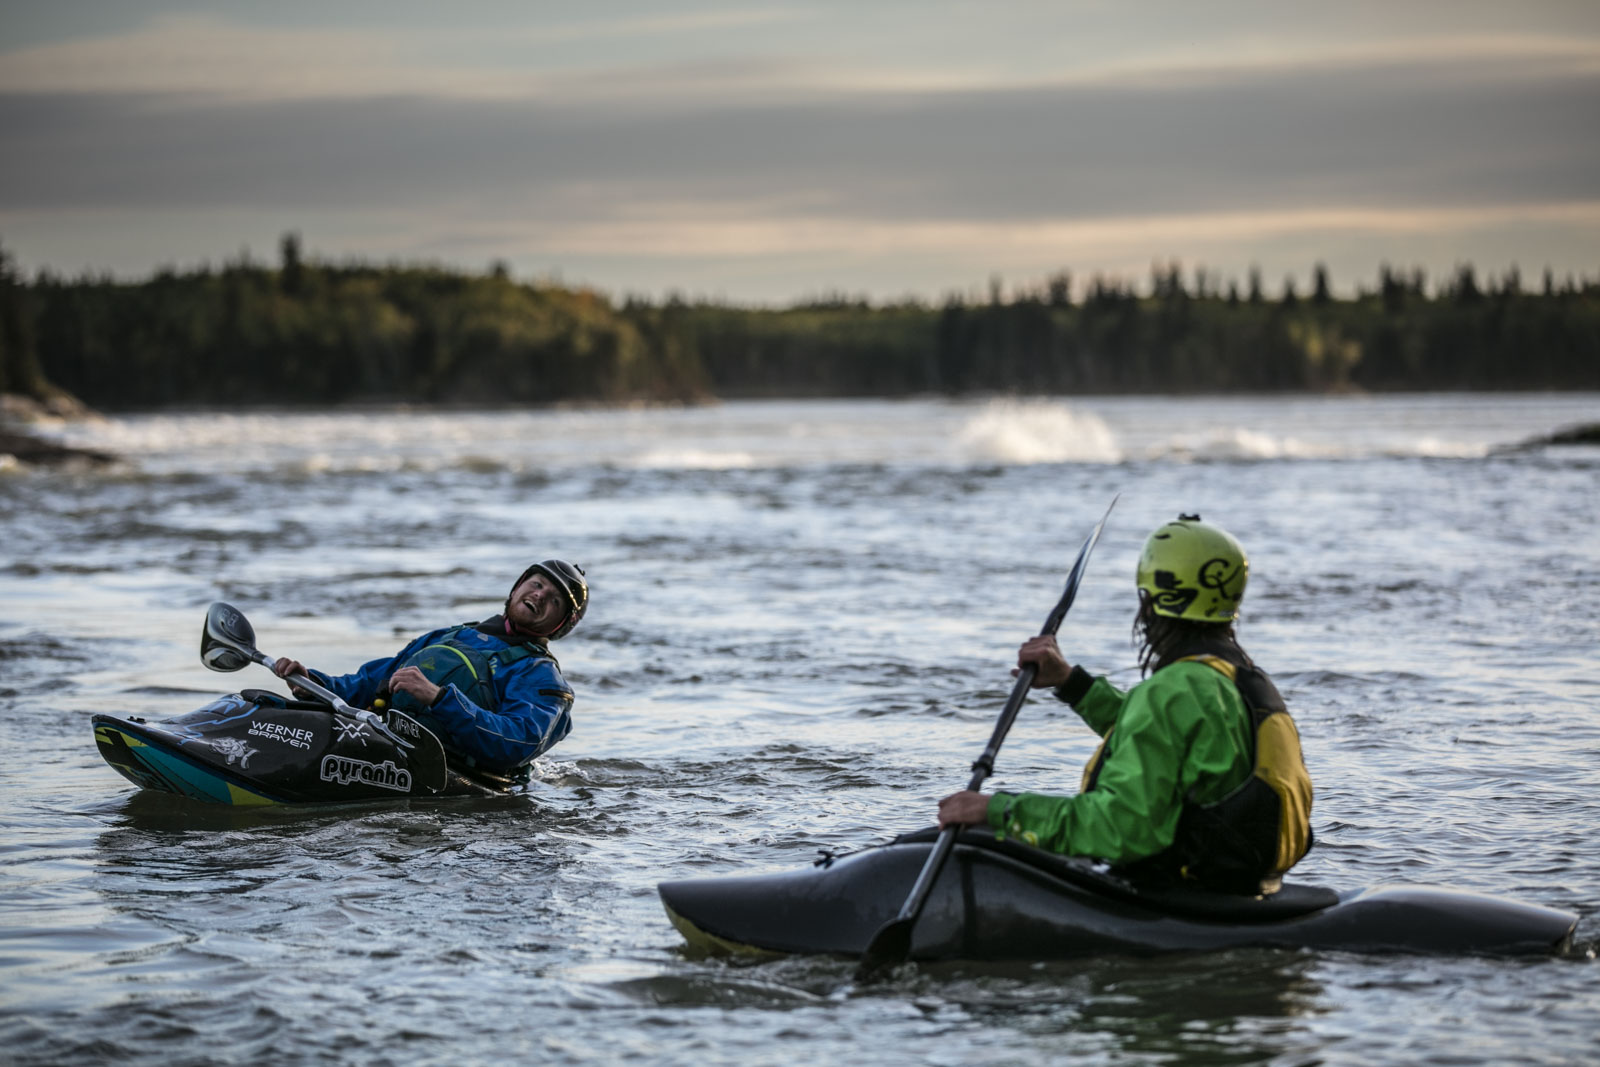  Ben Marr surfs Dream Wave at bladder falls during sunrise on the Nelson River , Manitoba.,Thursday September 15, 2016.    Photo/David Jackson 